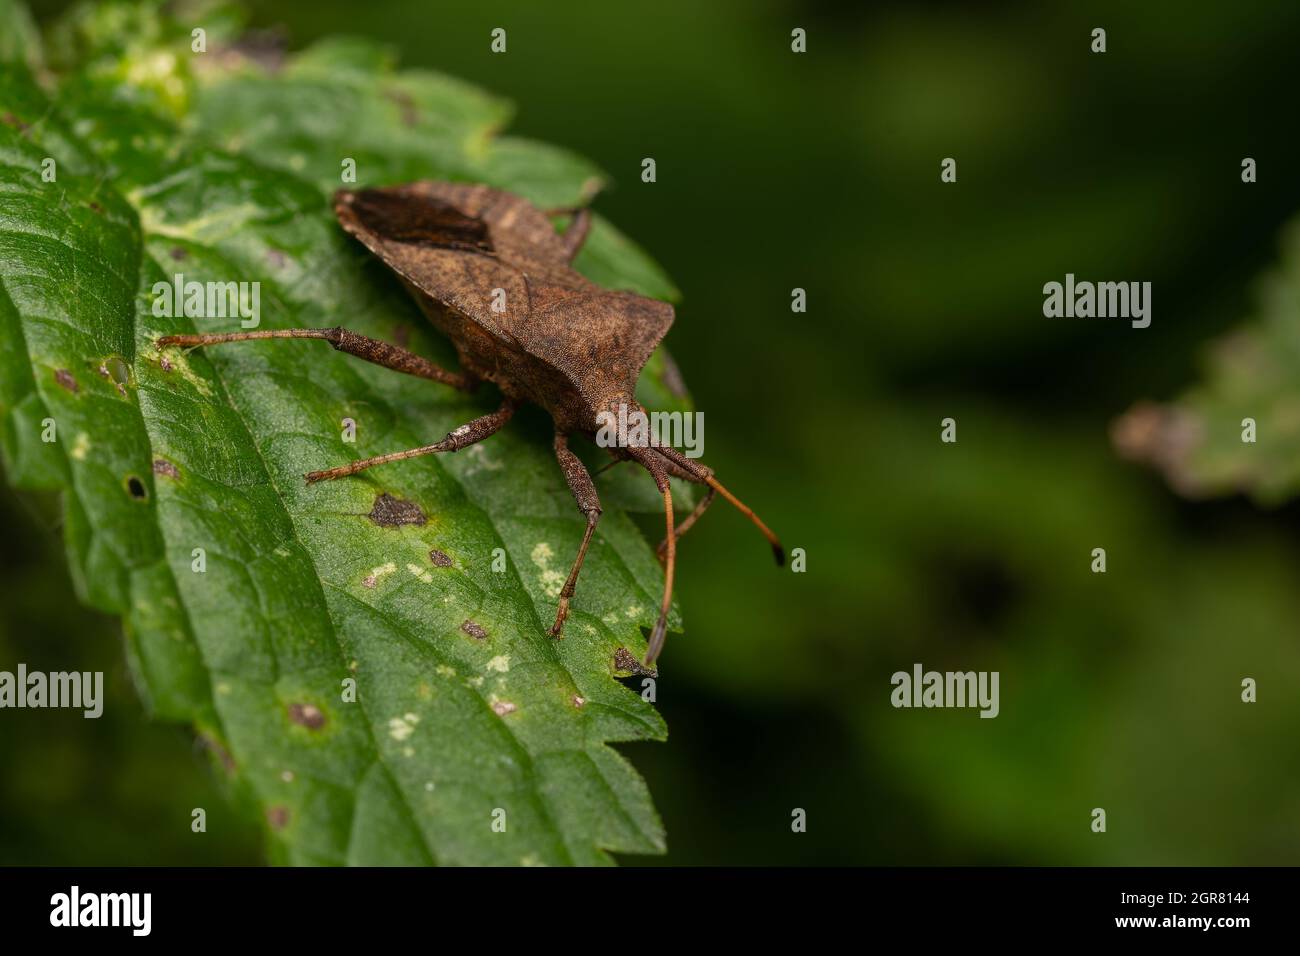 macro primo piano di un insetto meraviglioso come un ragno o volare o scarabeo su una foglia nella natura bella Foto Stock